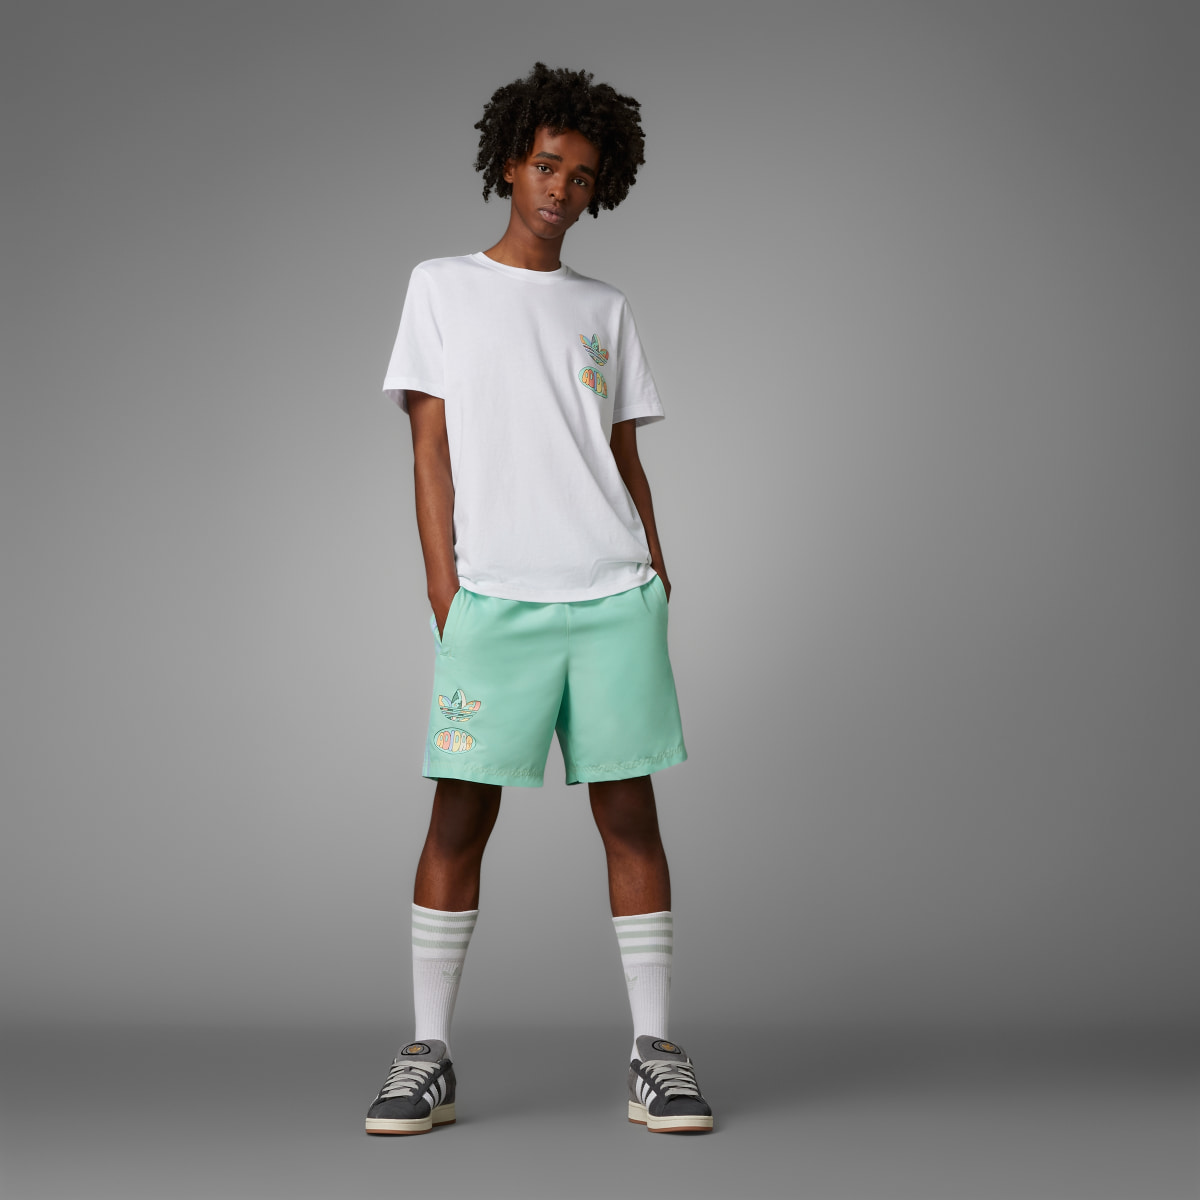 Adidas T-shirt avec graphisme avant/arrière Enjoy Summer. 5